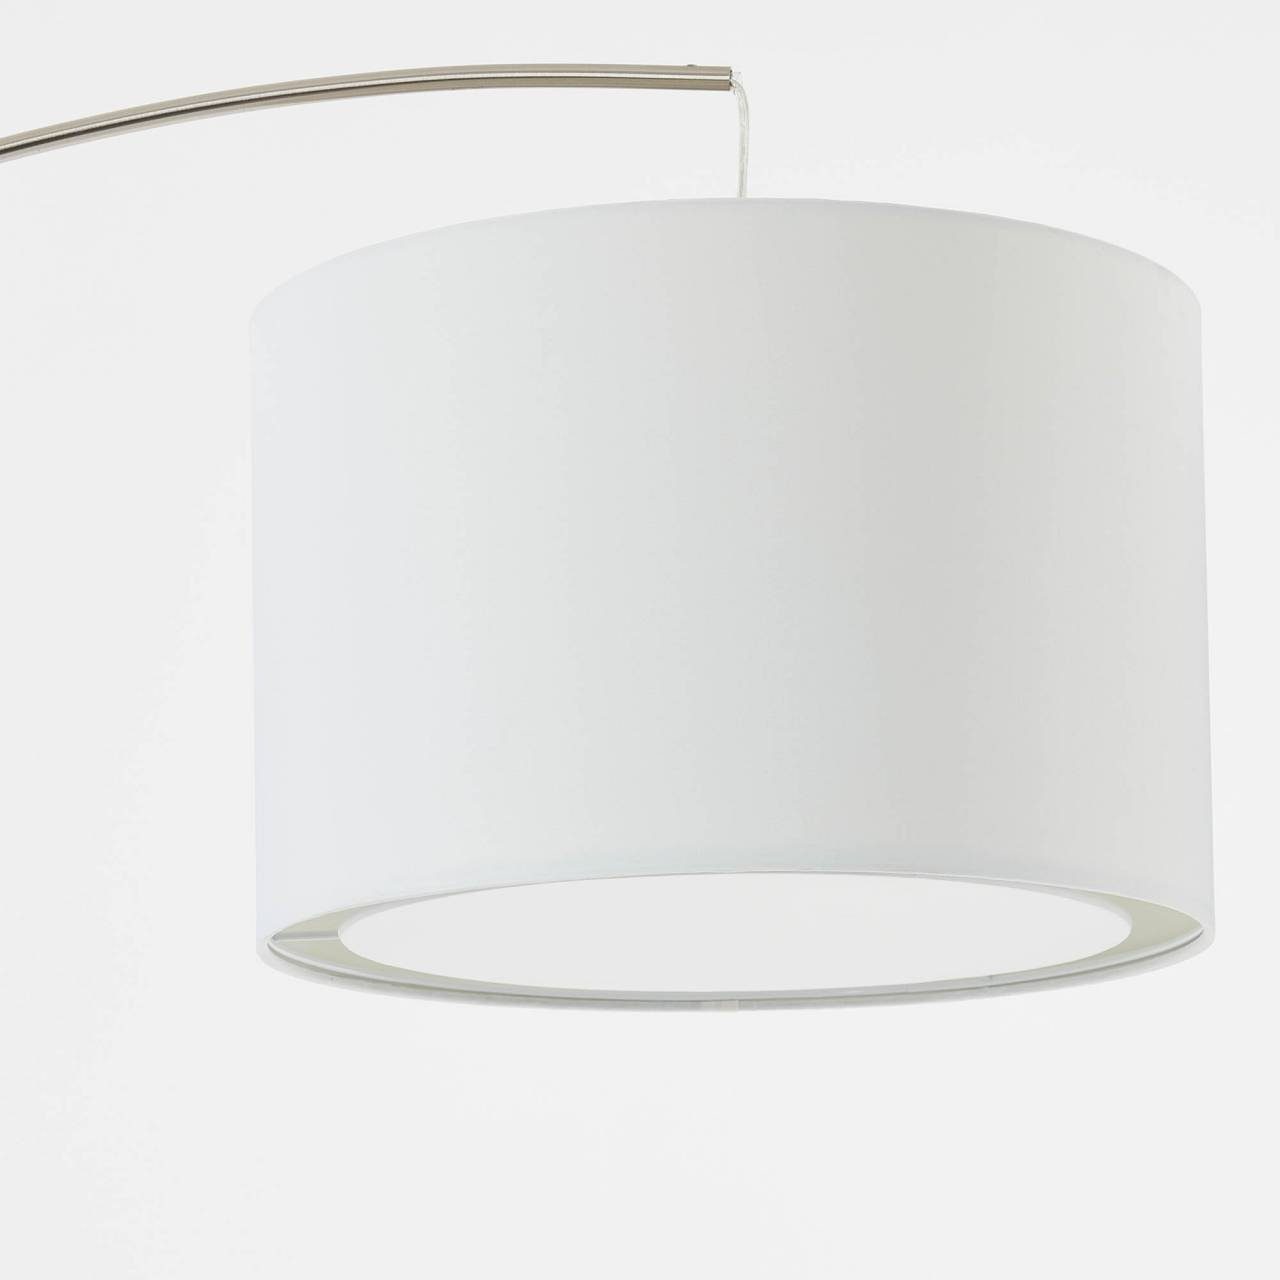 Bogenstandleuchte Lampe Brilliant Stehlampe 1x eisen/weiß gee E27, Clarie, Clarie 60W, A60, 1,8m